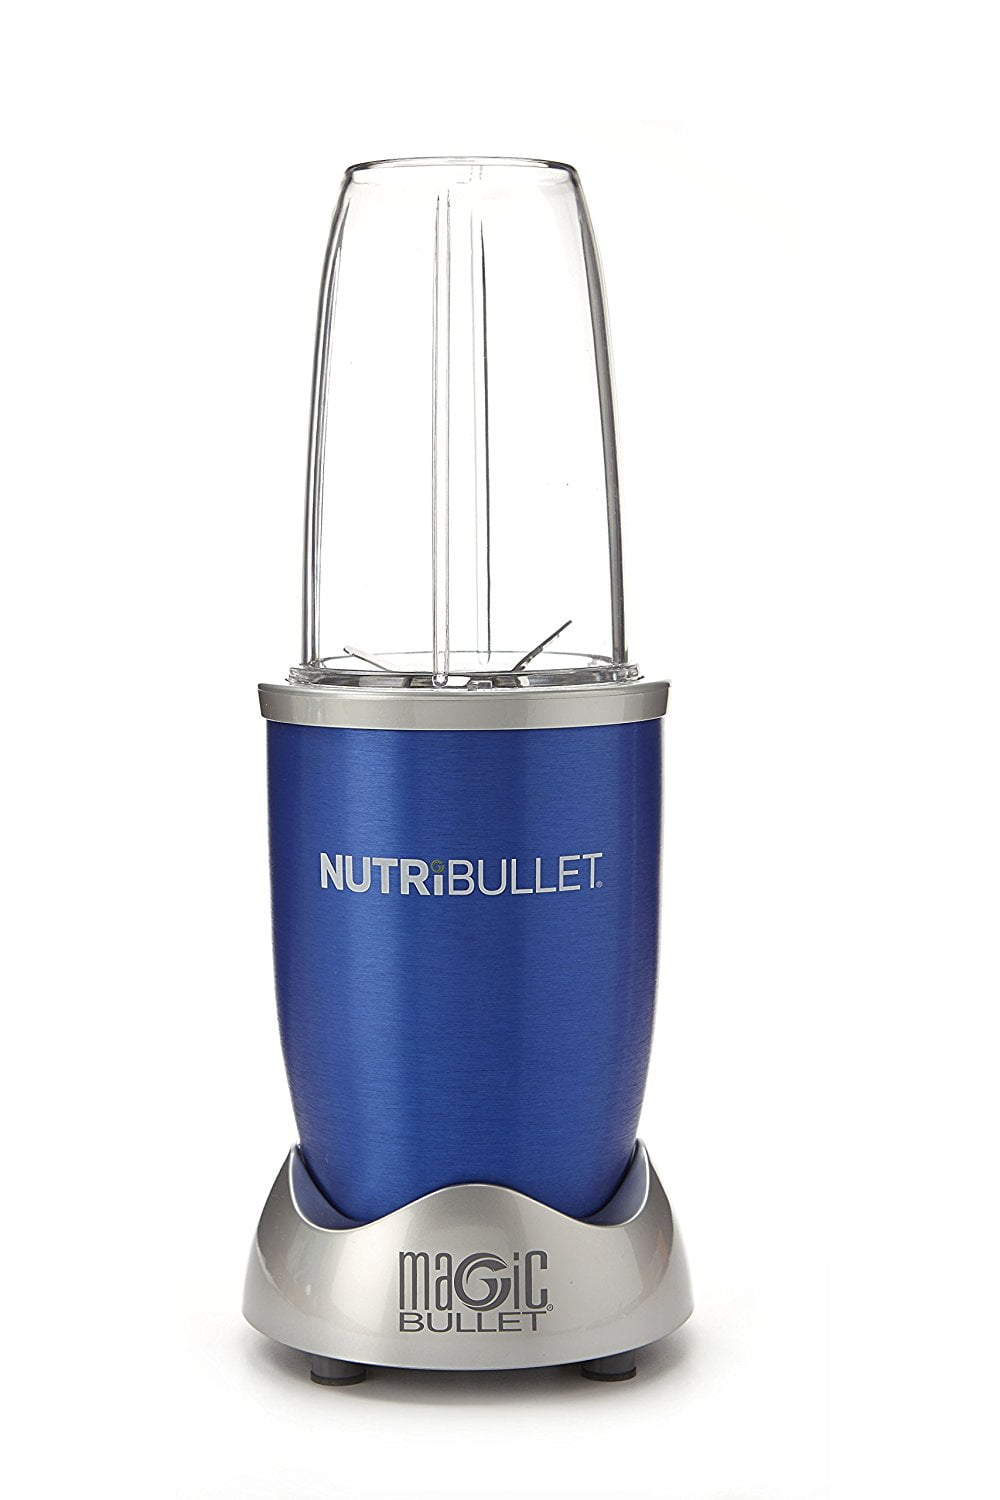 Meet the magic bullet® Portable Blender - nutribullet